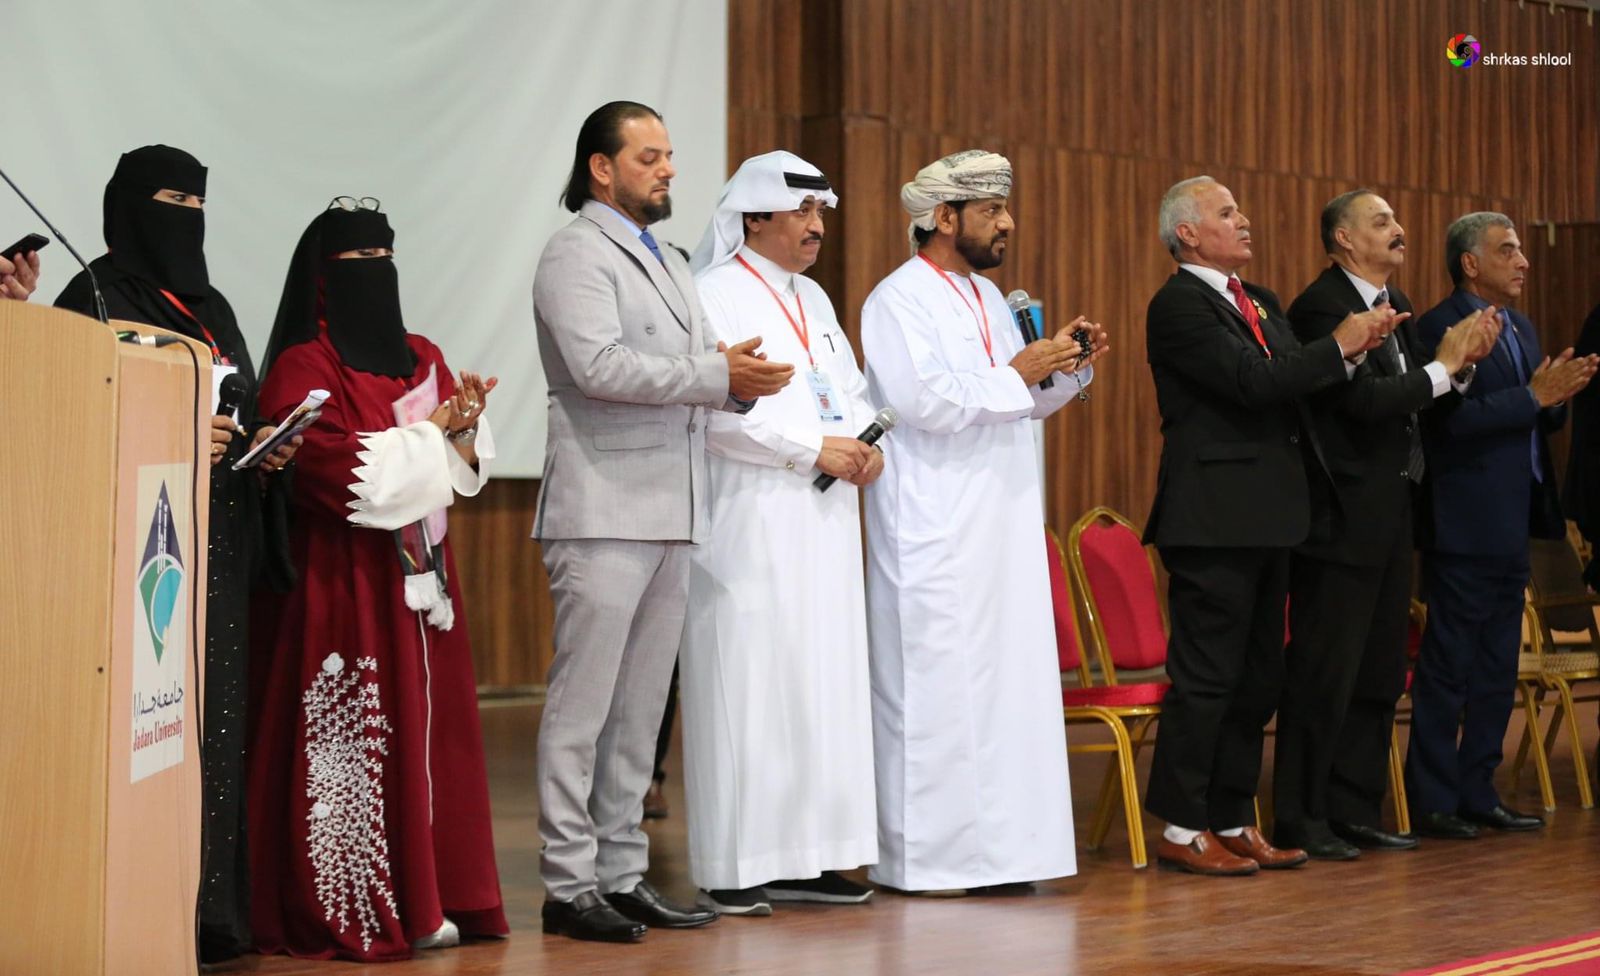 القناص و مشاركة شعرية مميزة بمهرجان عشتار الدولي بالأردن